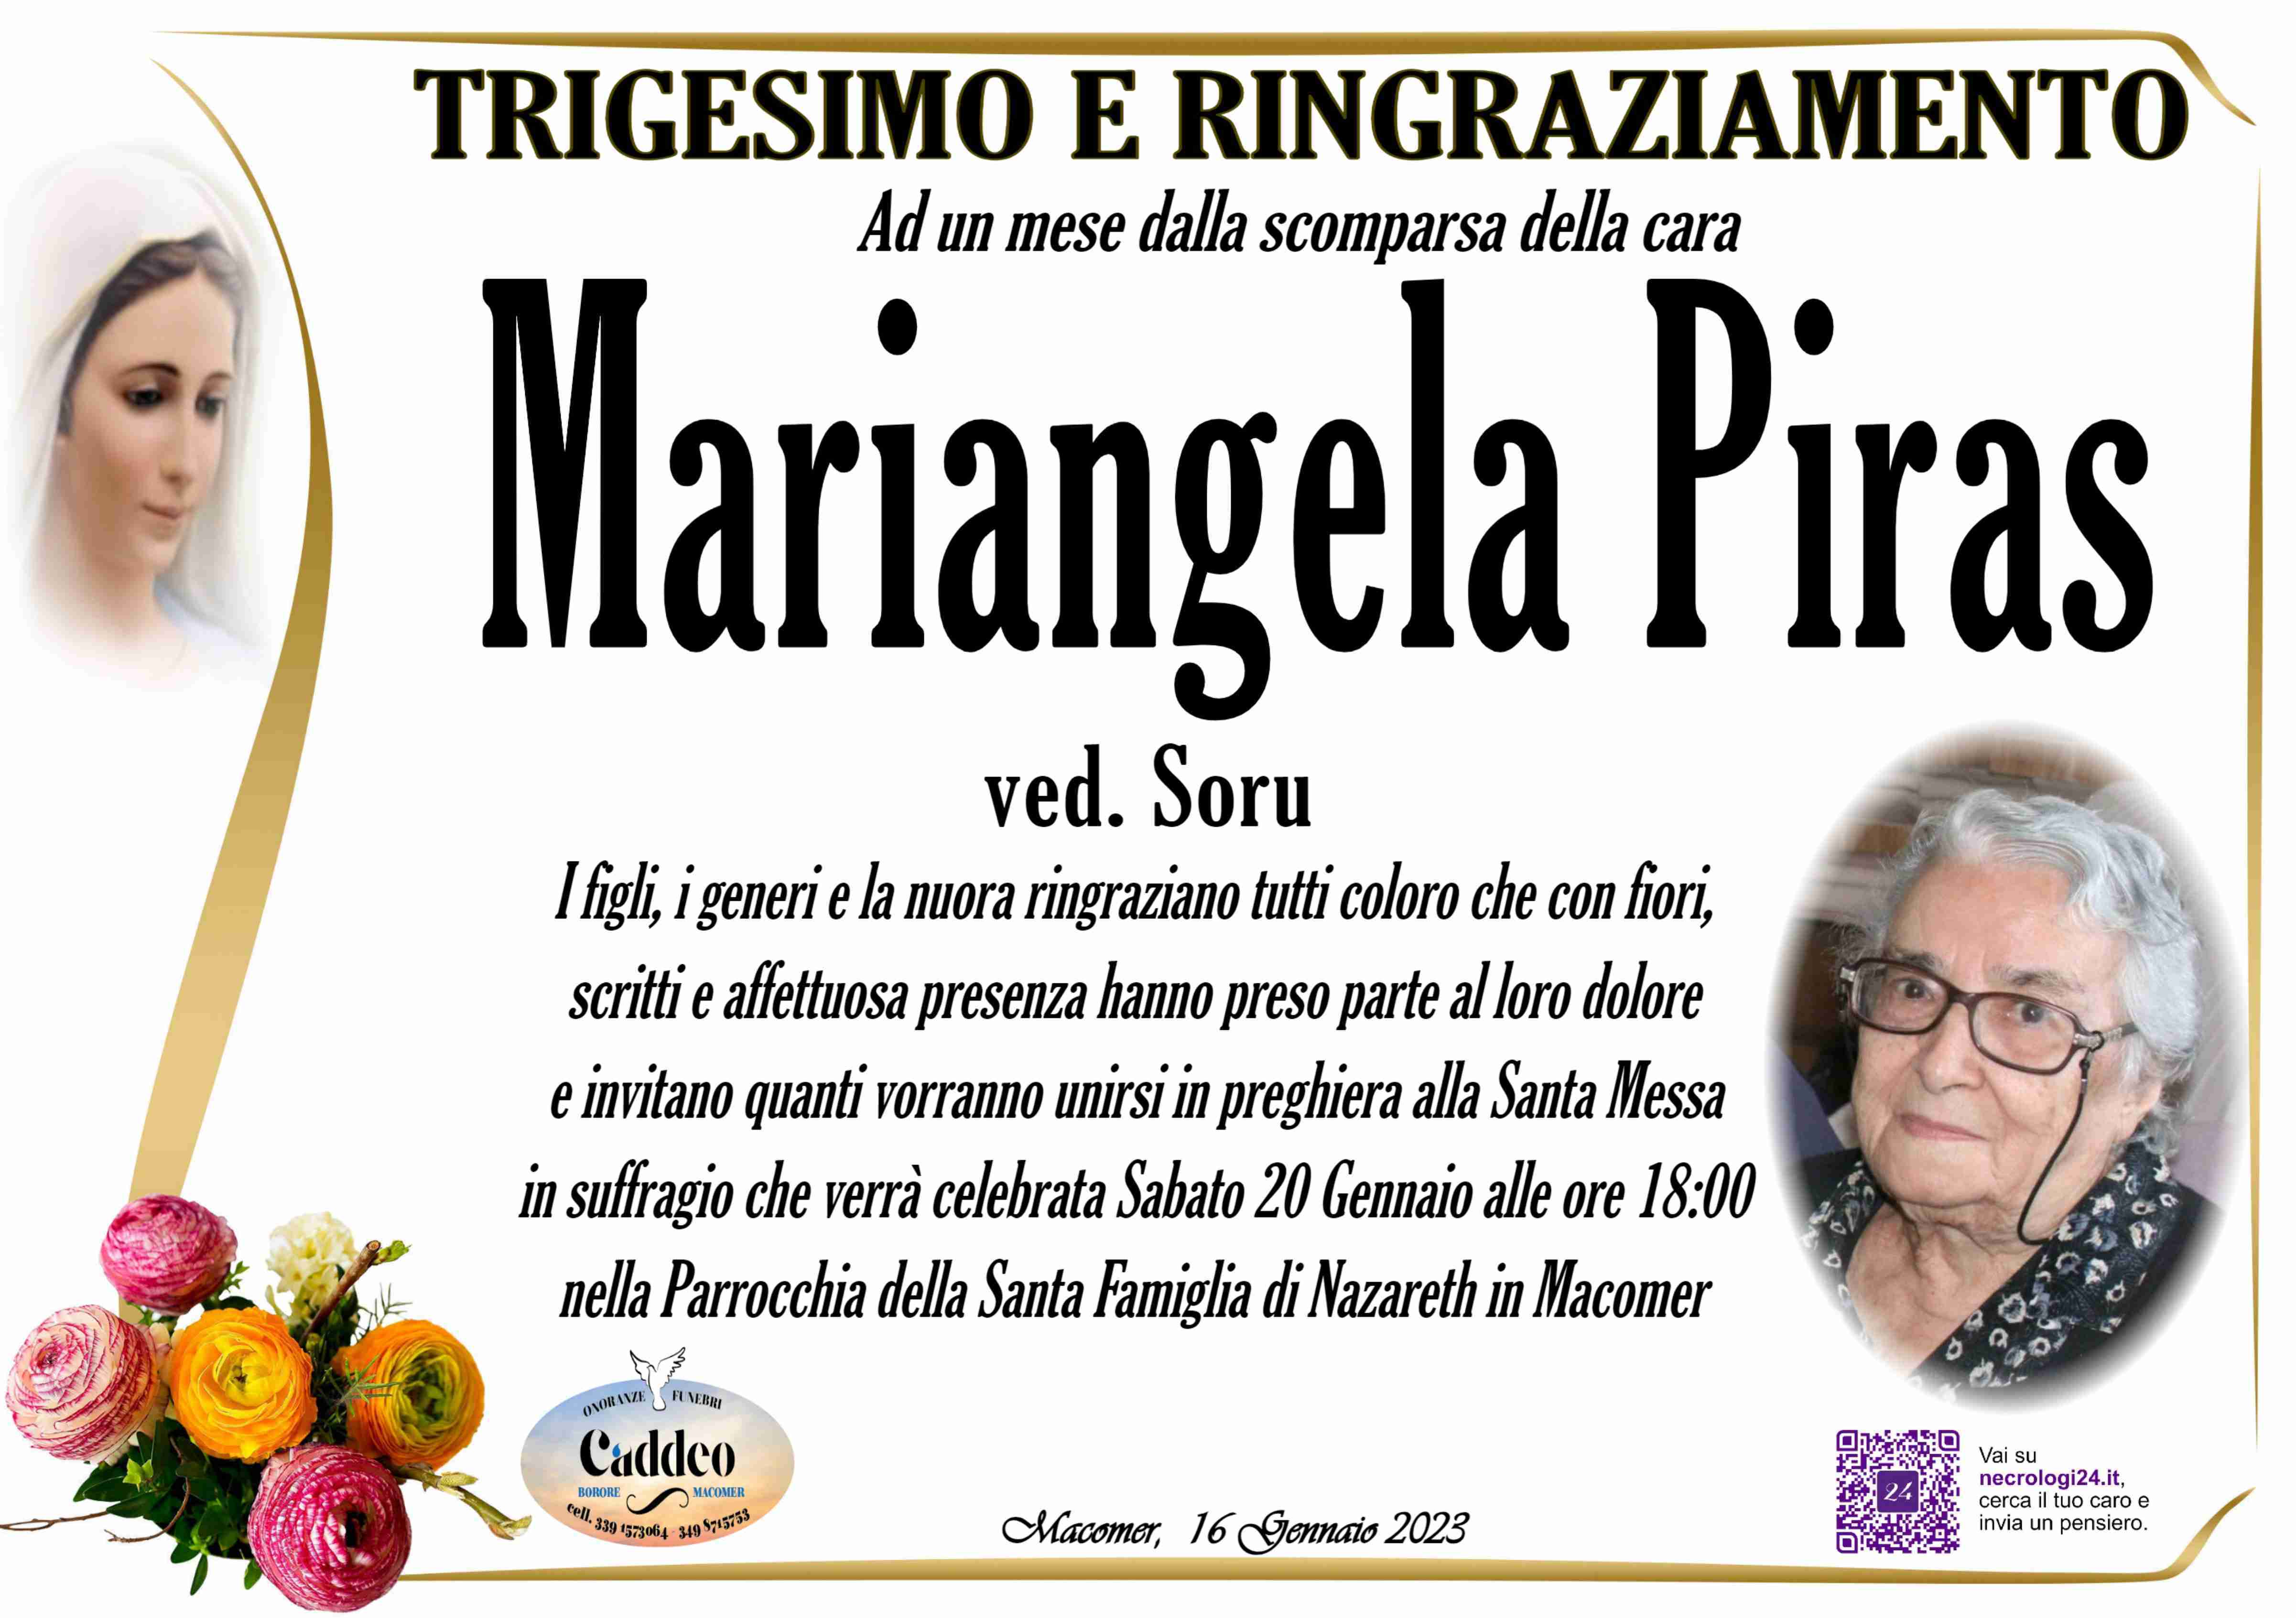 Mariangela Piras